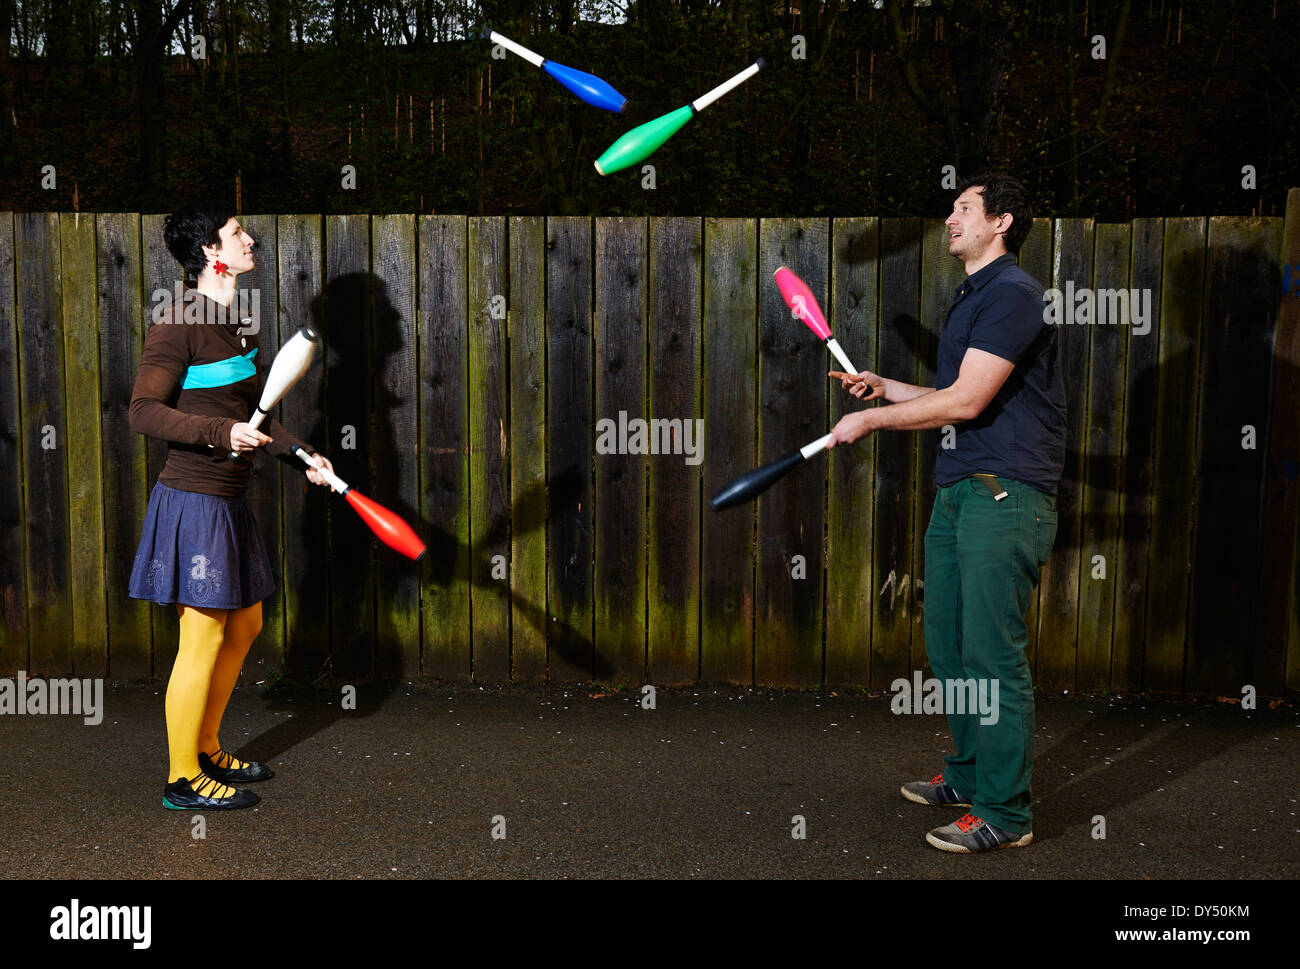 Zwei Personen Mann und Frau paar Jonglieren mit Keulen gegen die Holzwand im Park. Gaukler jonglieren Stockfoto